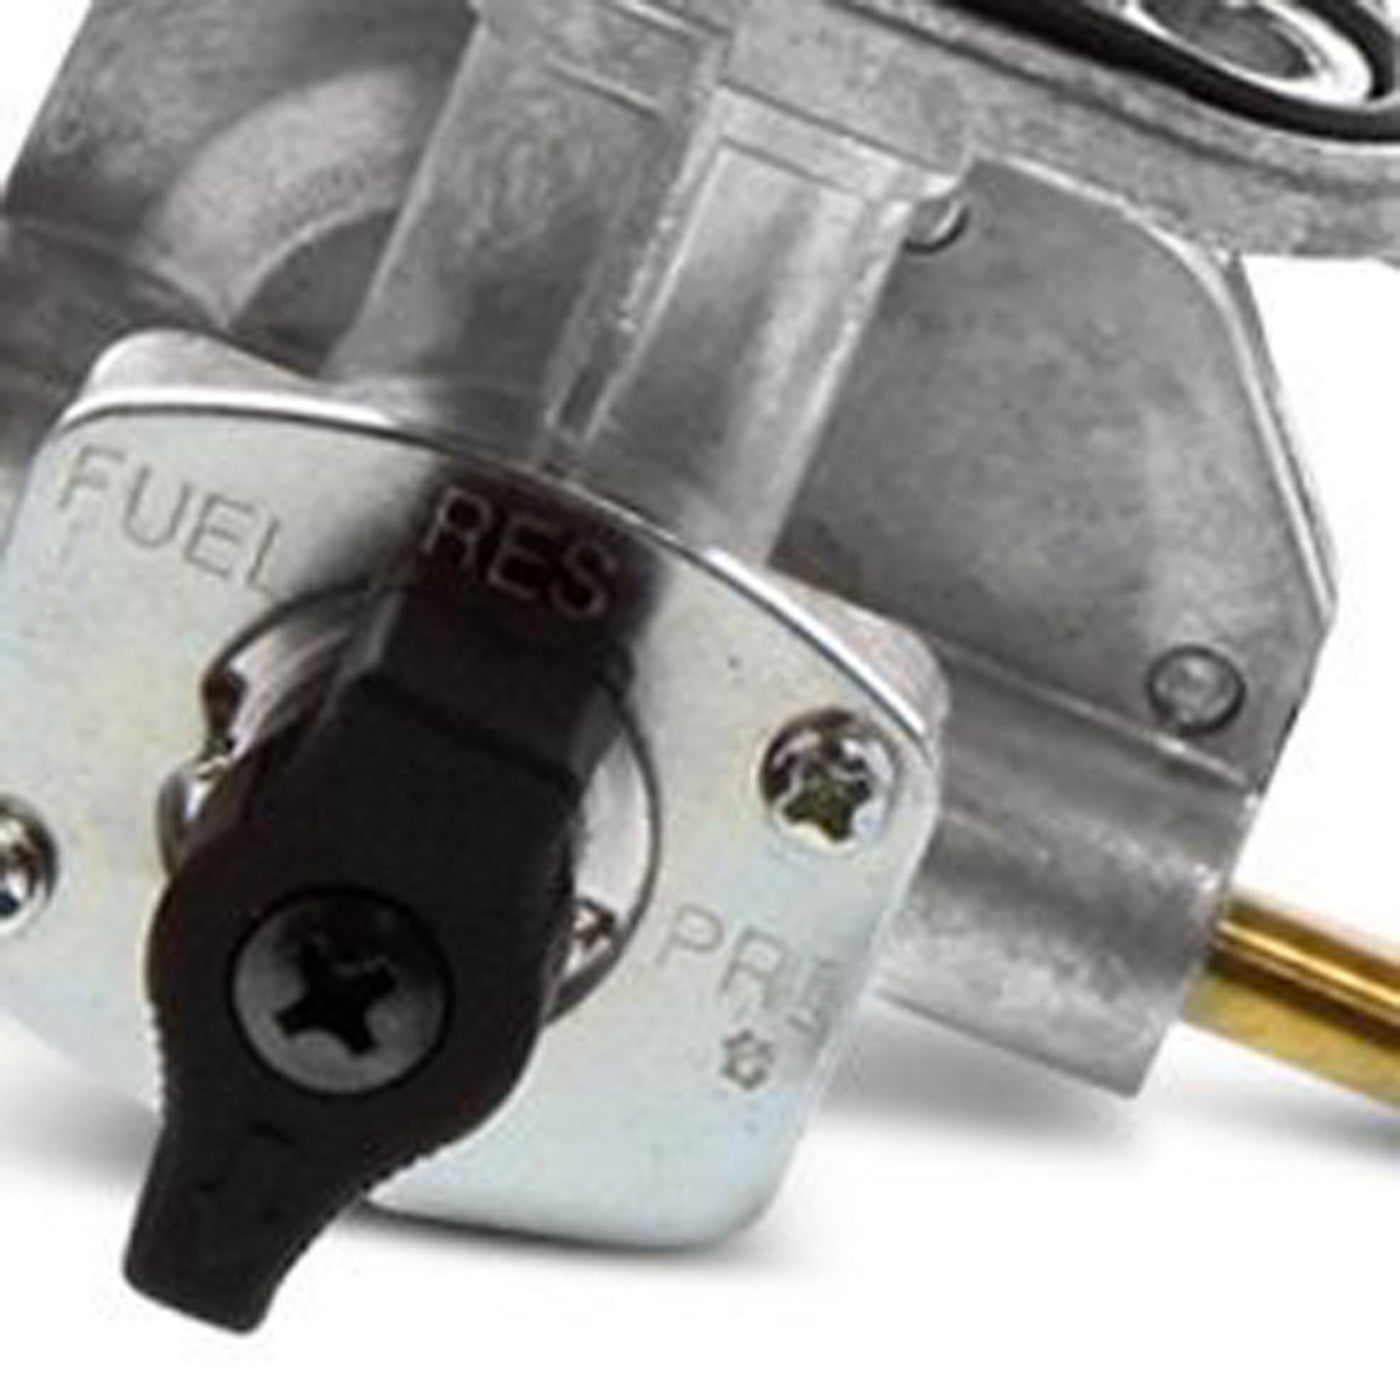 Fuel Star FS101-0120 Fuel Valve Kit #FS101-0120